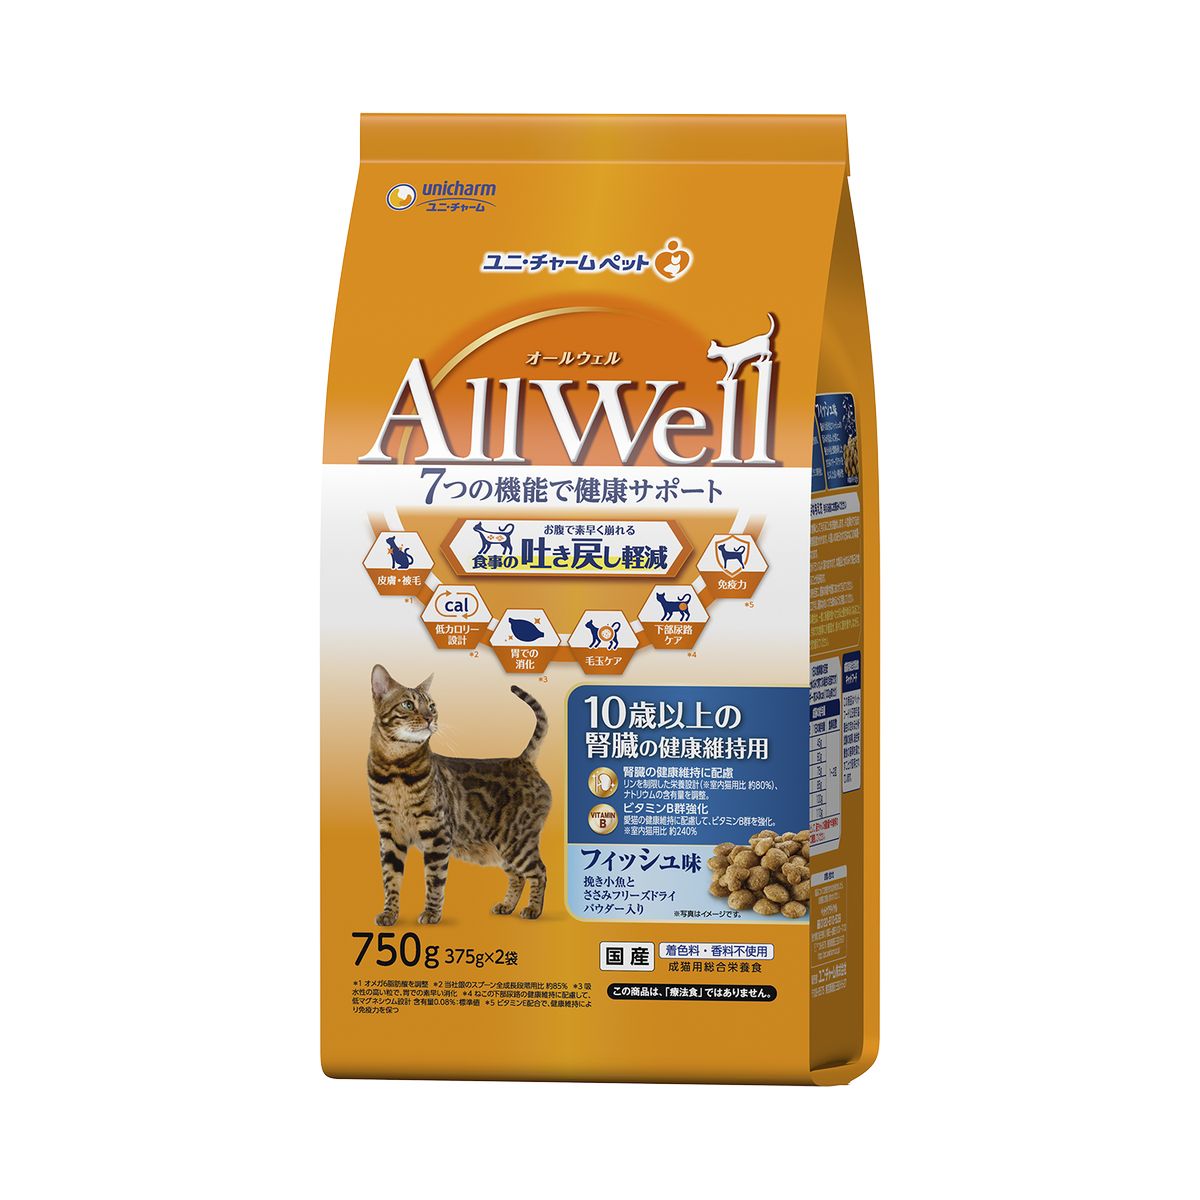 AllWell10歳以上の腎臓の健康維持用フィッシュ味挽き小魚とささみフリーズドライパウダー入り750g×9